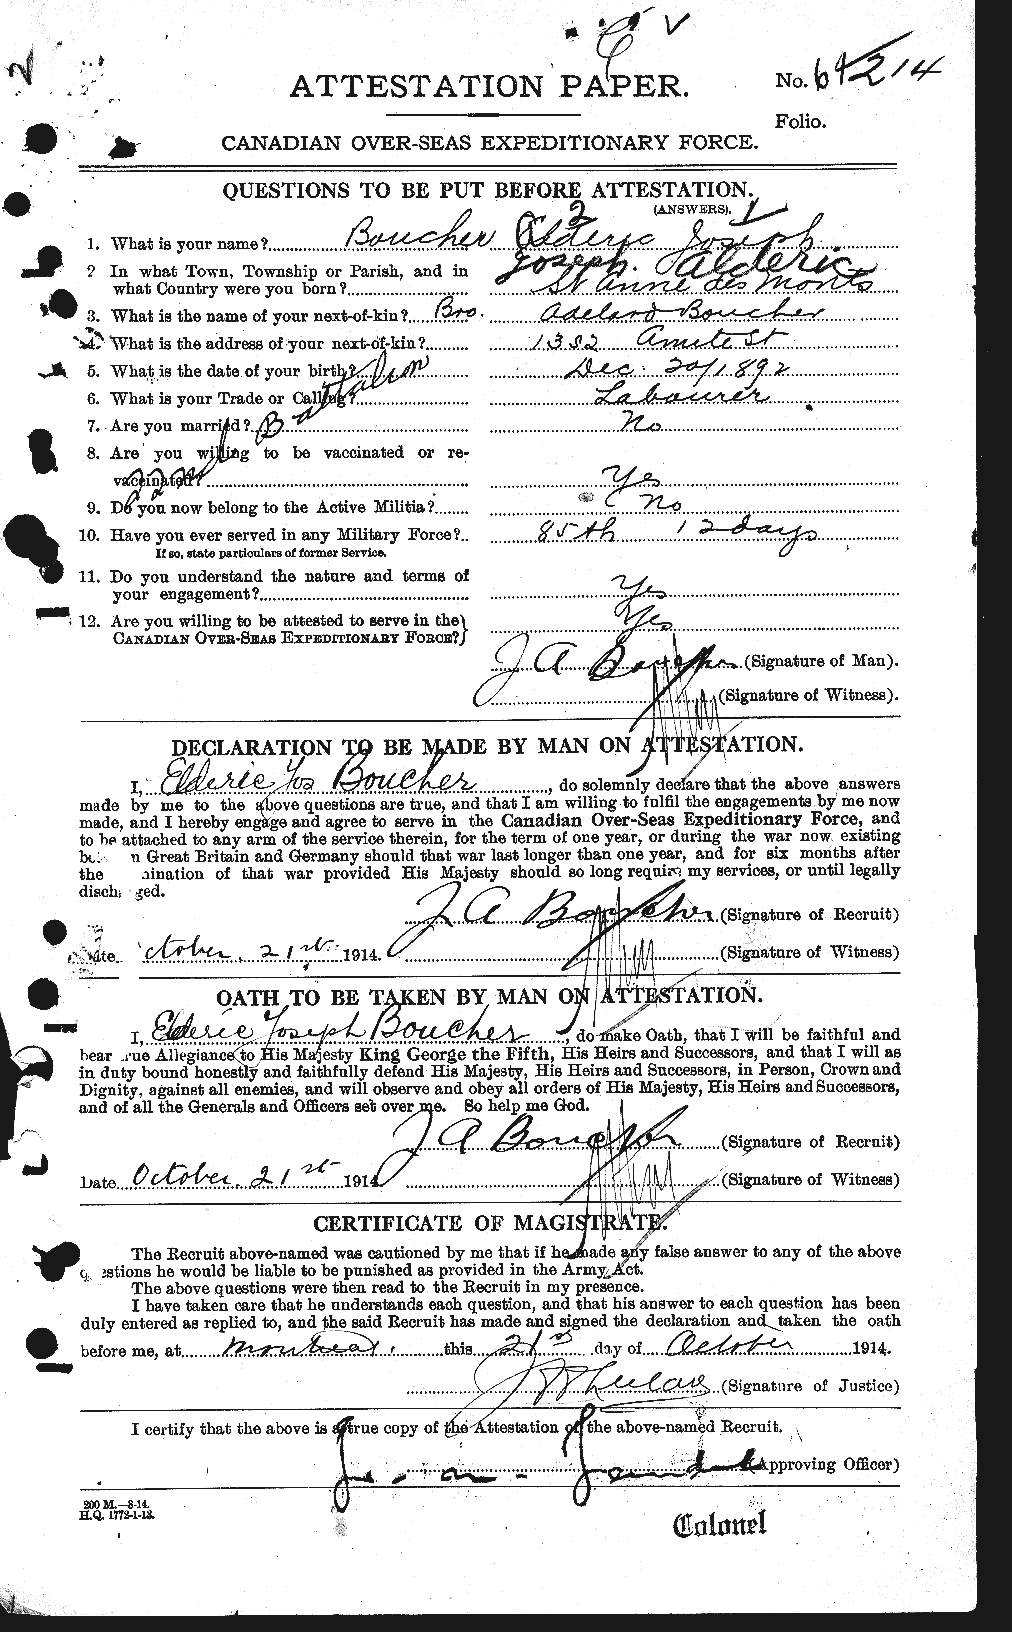 Dossiers du Personnel de la Première Guerre mondiale - CEC 255512a